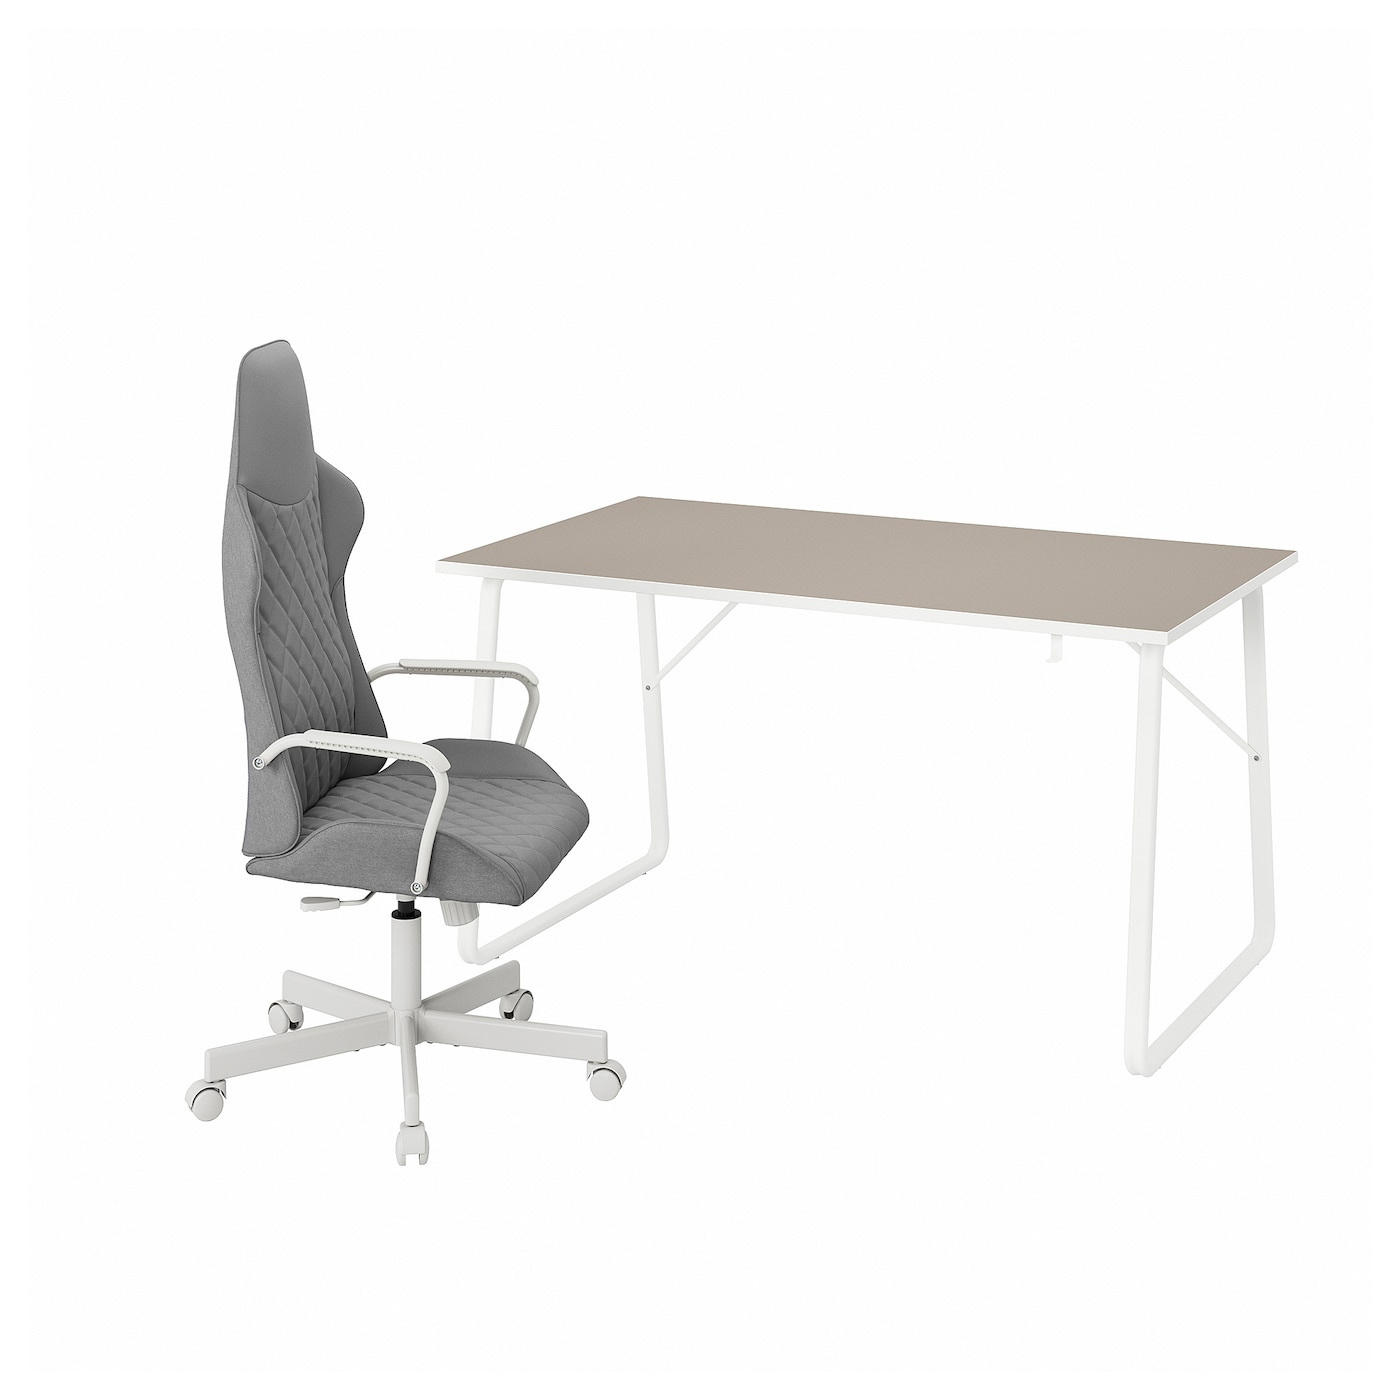 Игровой стол и стул - IKEA HUVUDSPELARE/UTESPELARE, 153х87х7 см, бежевый/серый, ИКЕА ХУВУДСПЕЛАРЕ/УТЕСПЕЛАРЕ